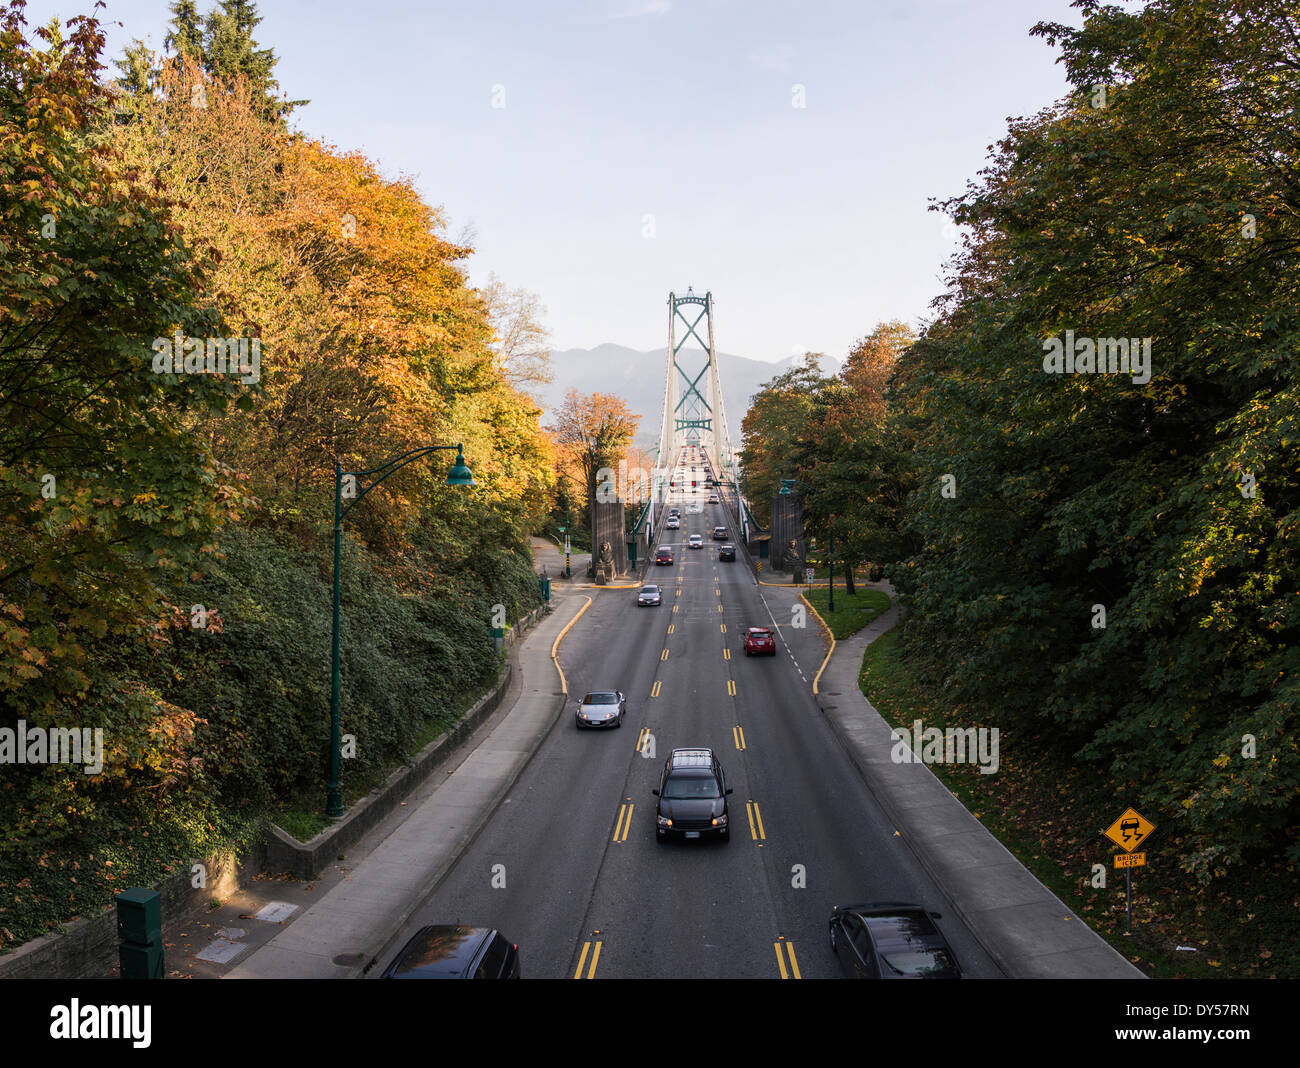 Route de bridge, Vancouver, British Columbia, Canada Banque D'Images